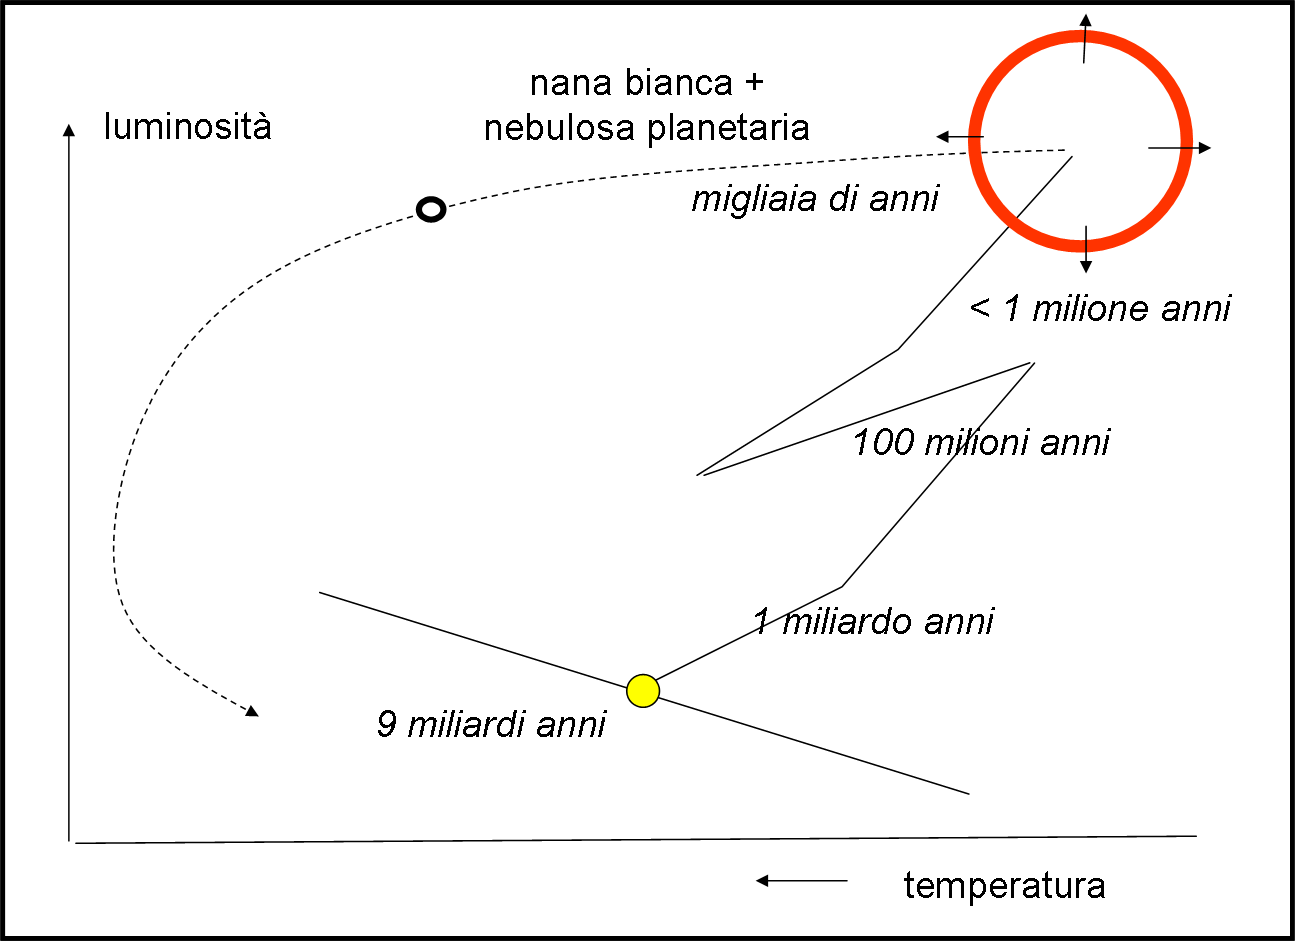 Eì la trasformazione definitiva del Sole cche si separa, praticament, in due parti: gli strati esterni vanno a formar una nebulosa planetaria (il cerchio rosso della figura che, però, non appartiene più al diagramma HR); 2) ilo nucleo di carbonio, caldissimo, ma poco luminoso a causa dele dimensioni planetarie. Al posto del Sole abbiamo una piccol e densissima nana bianca che si sistema in basso a sinistra del diagramma HR.